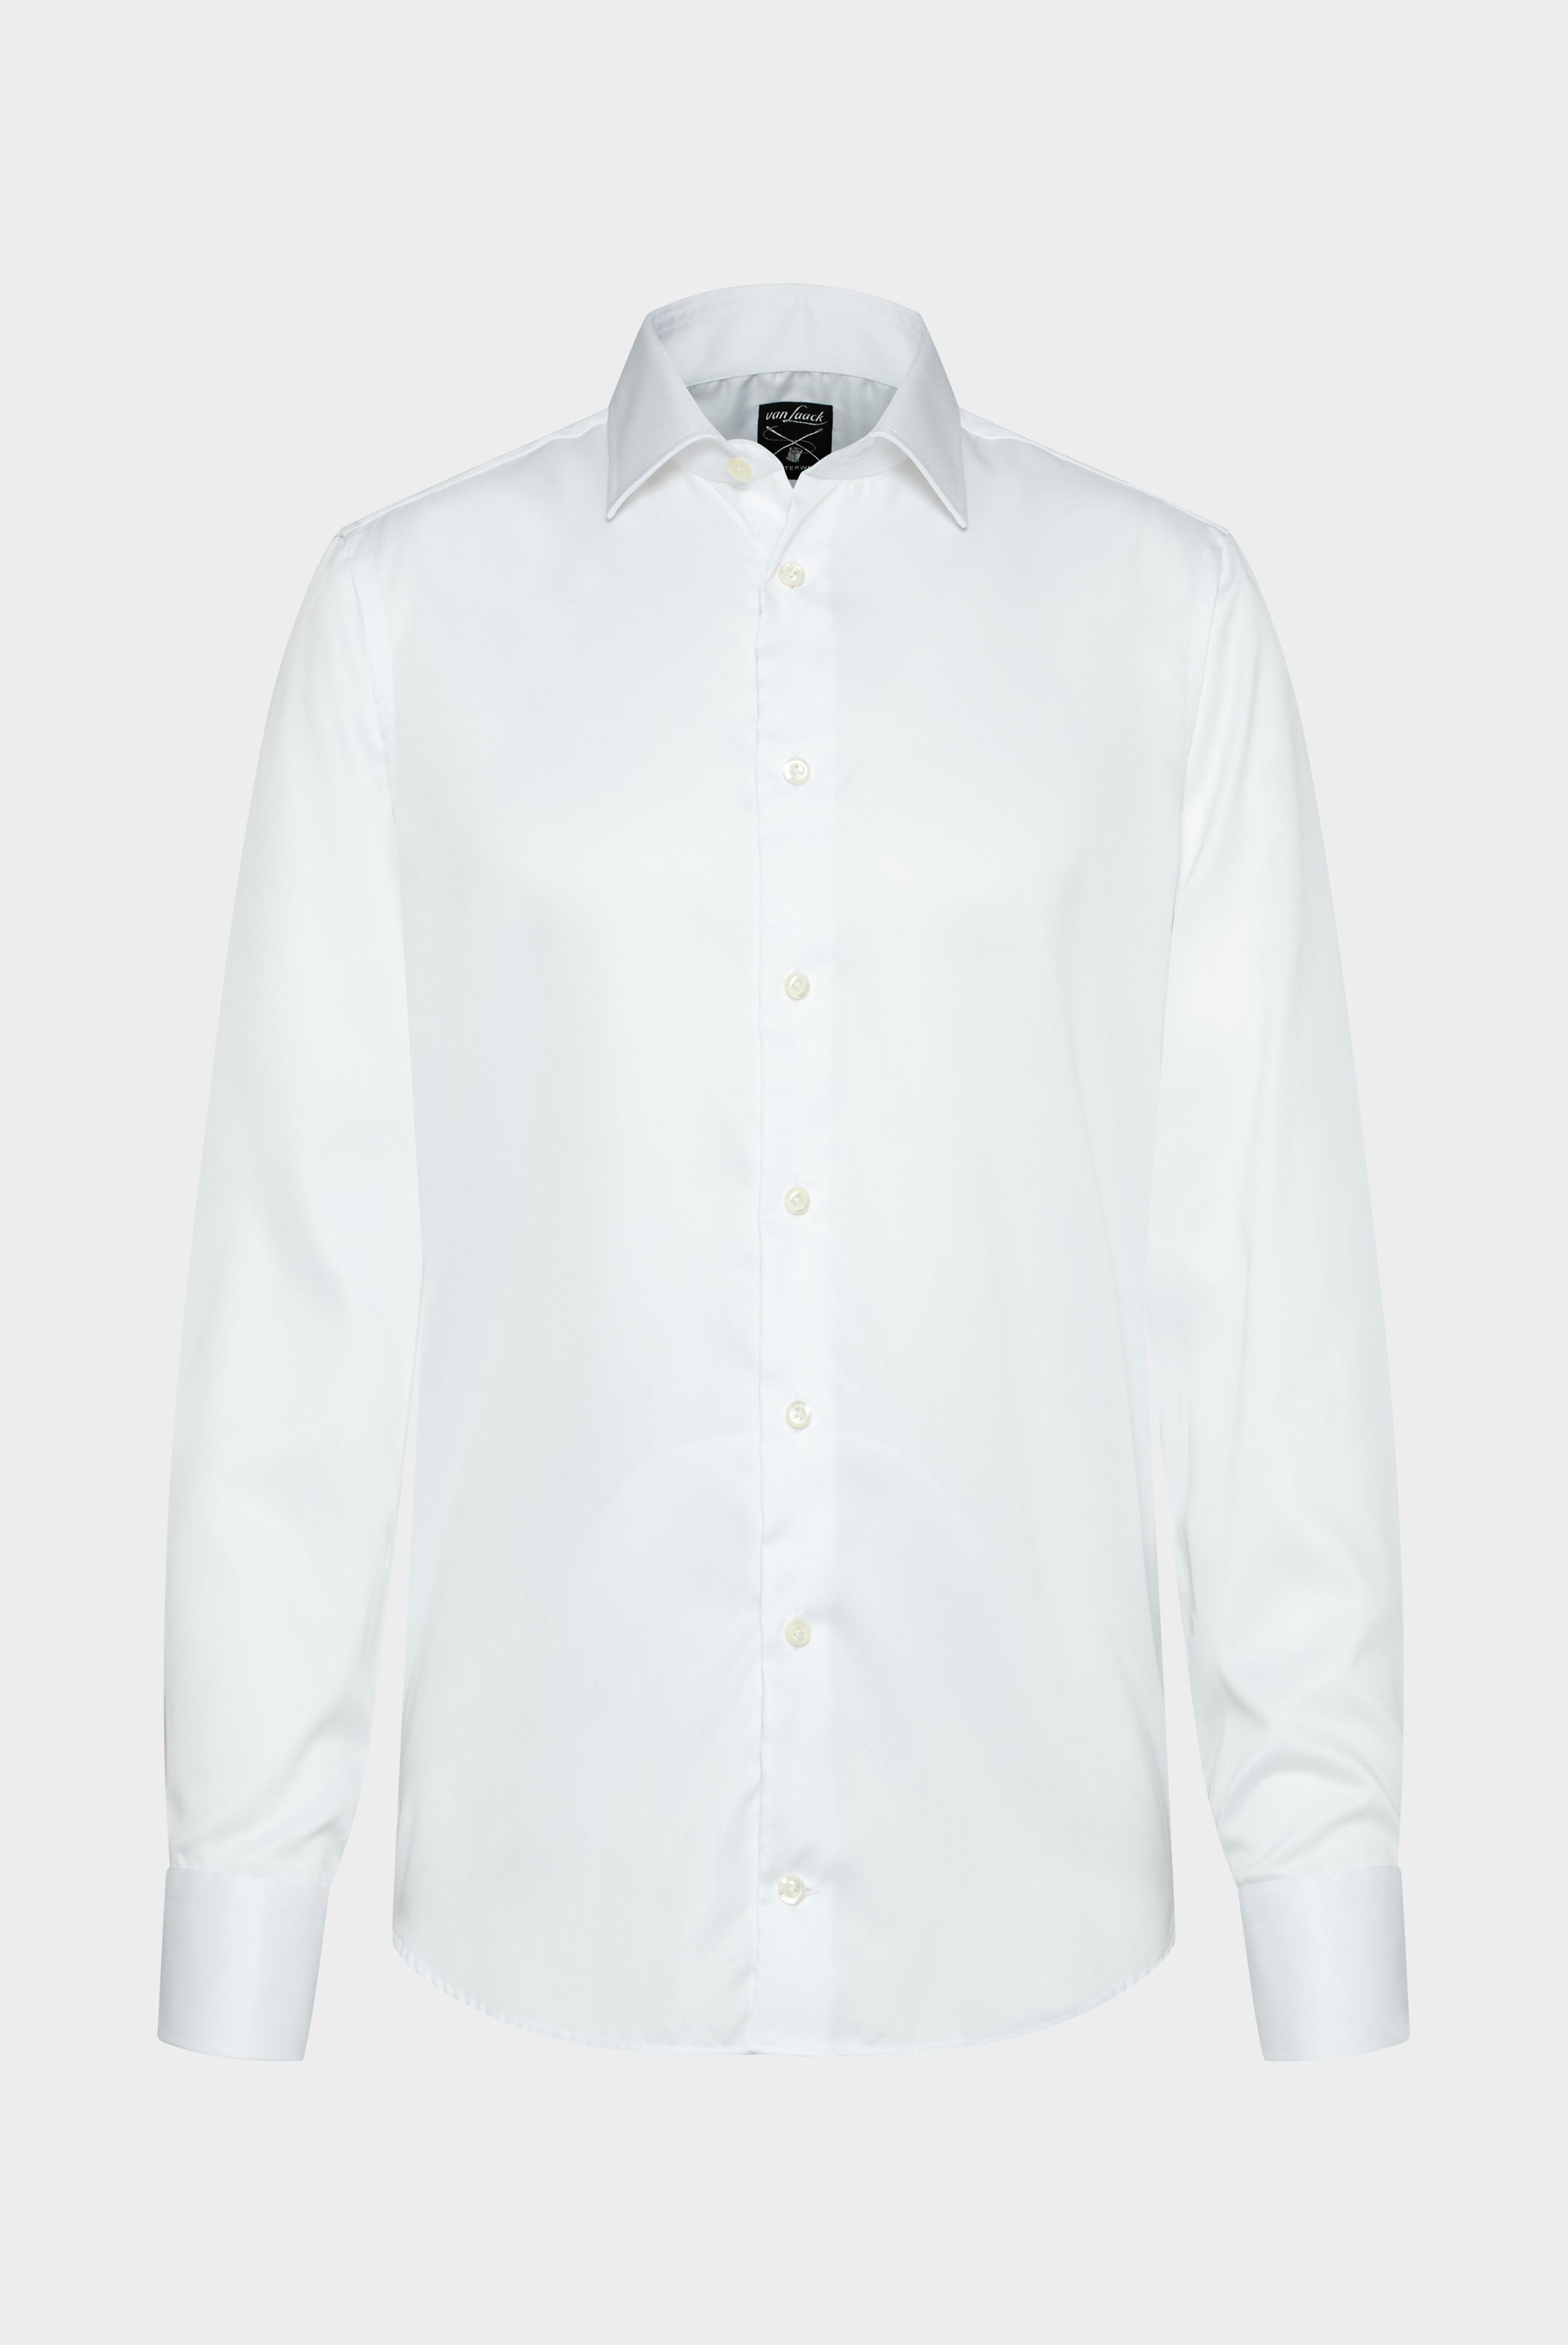 Bügelleichte Hemden+Bügelfreies Twill Hemd Tailor Fit+20.2011.BQ.132241.000.38